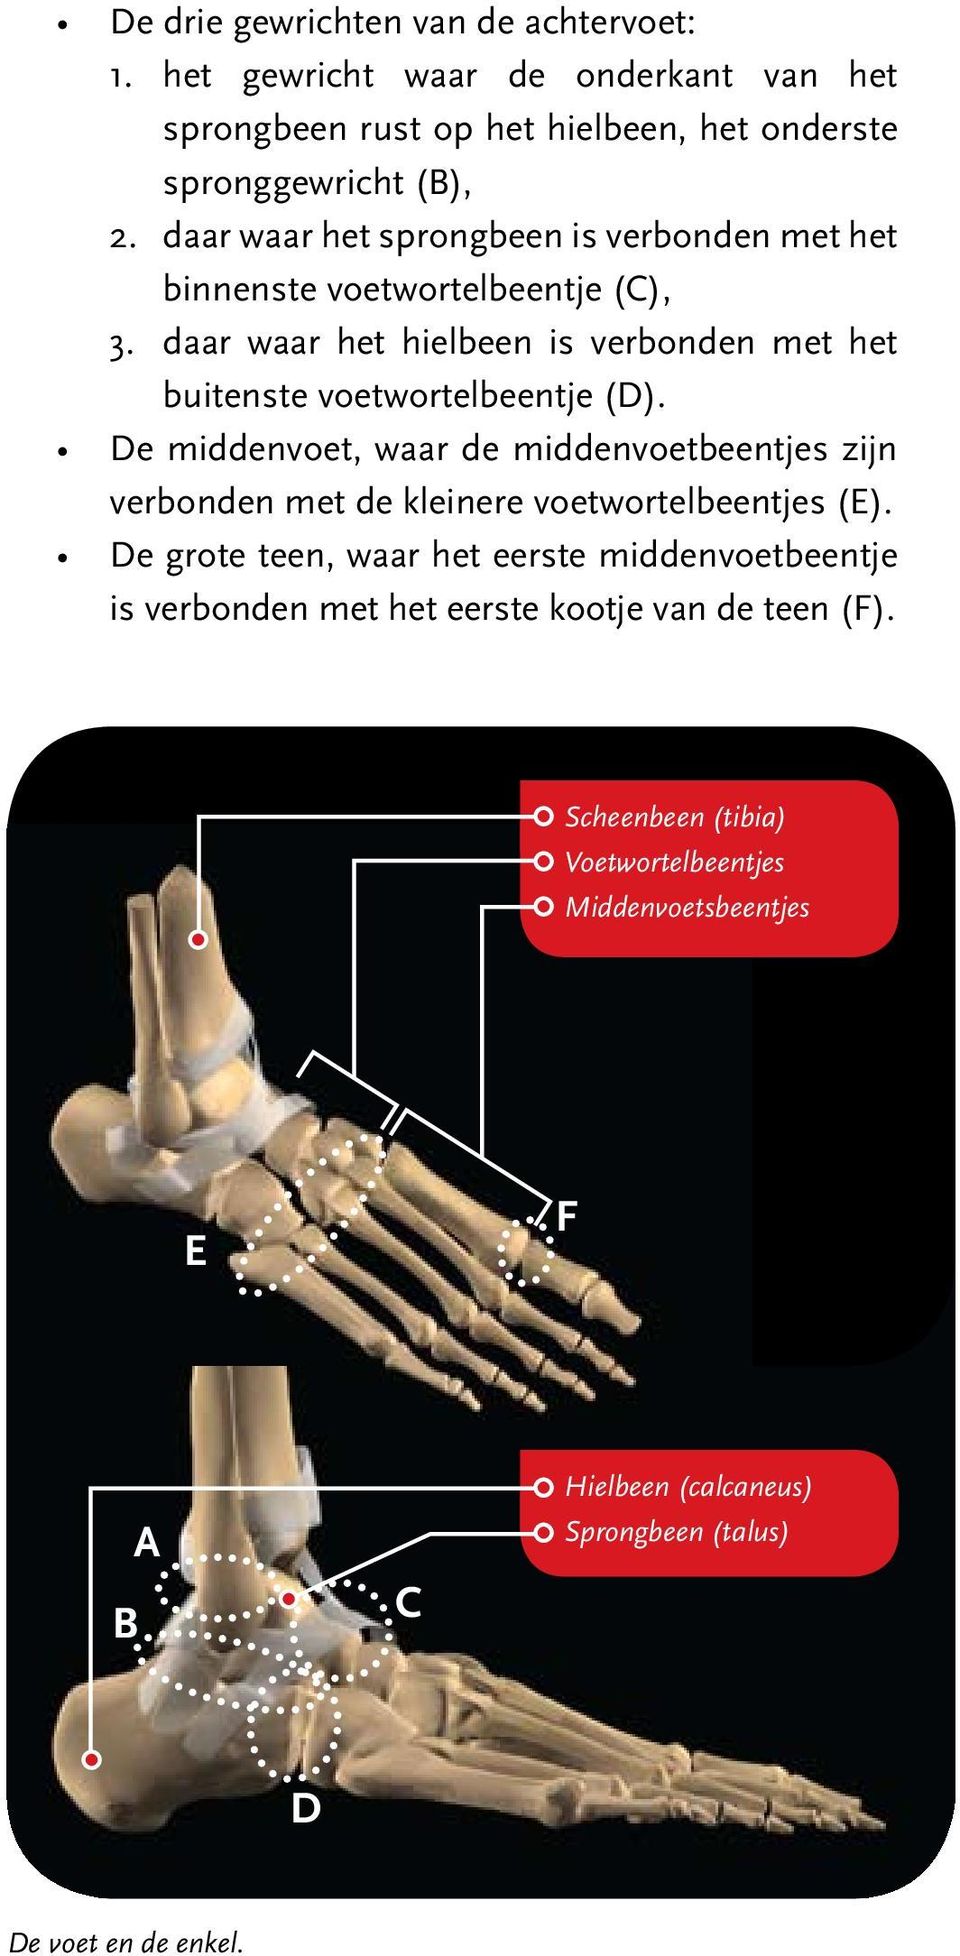 daar waar het hielbeen is verbonden met het buitenste voetwortelbeentje (D). verbonden met de kleinere voetwortelbeentjes (E).